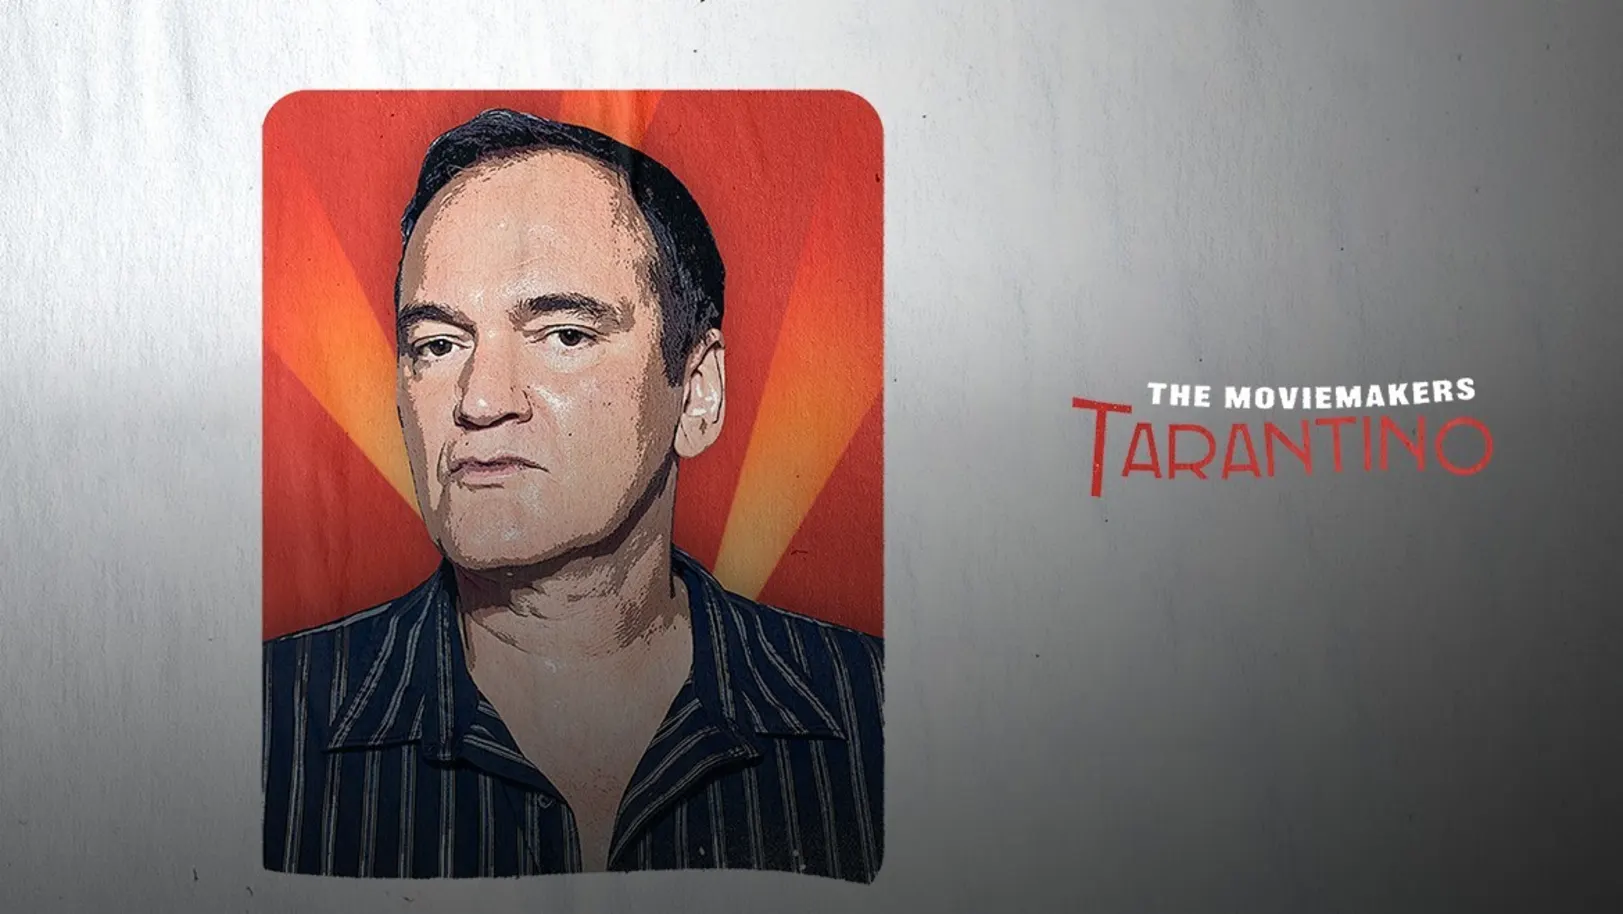 The Moviemakers Tarantino Movie